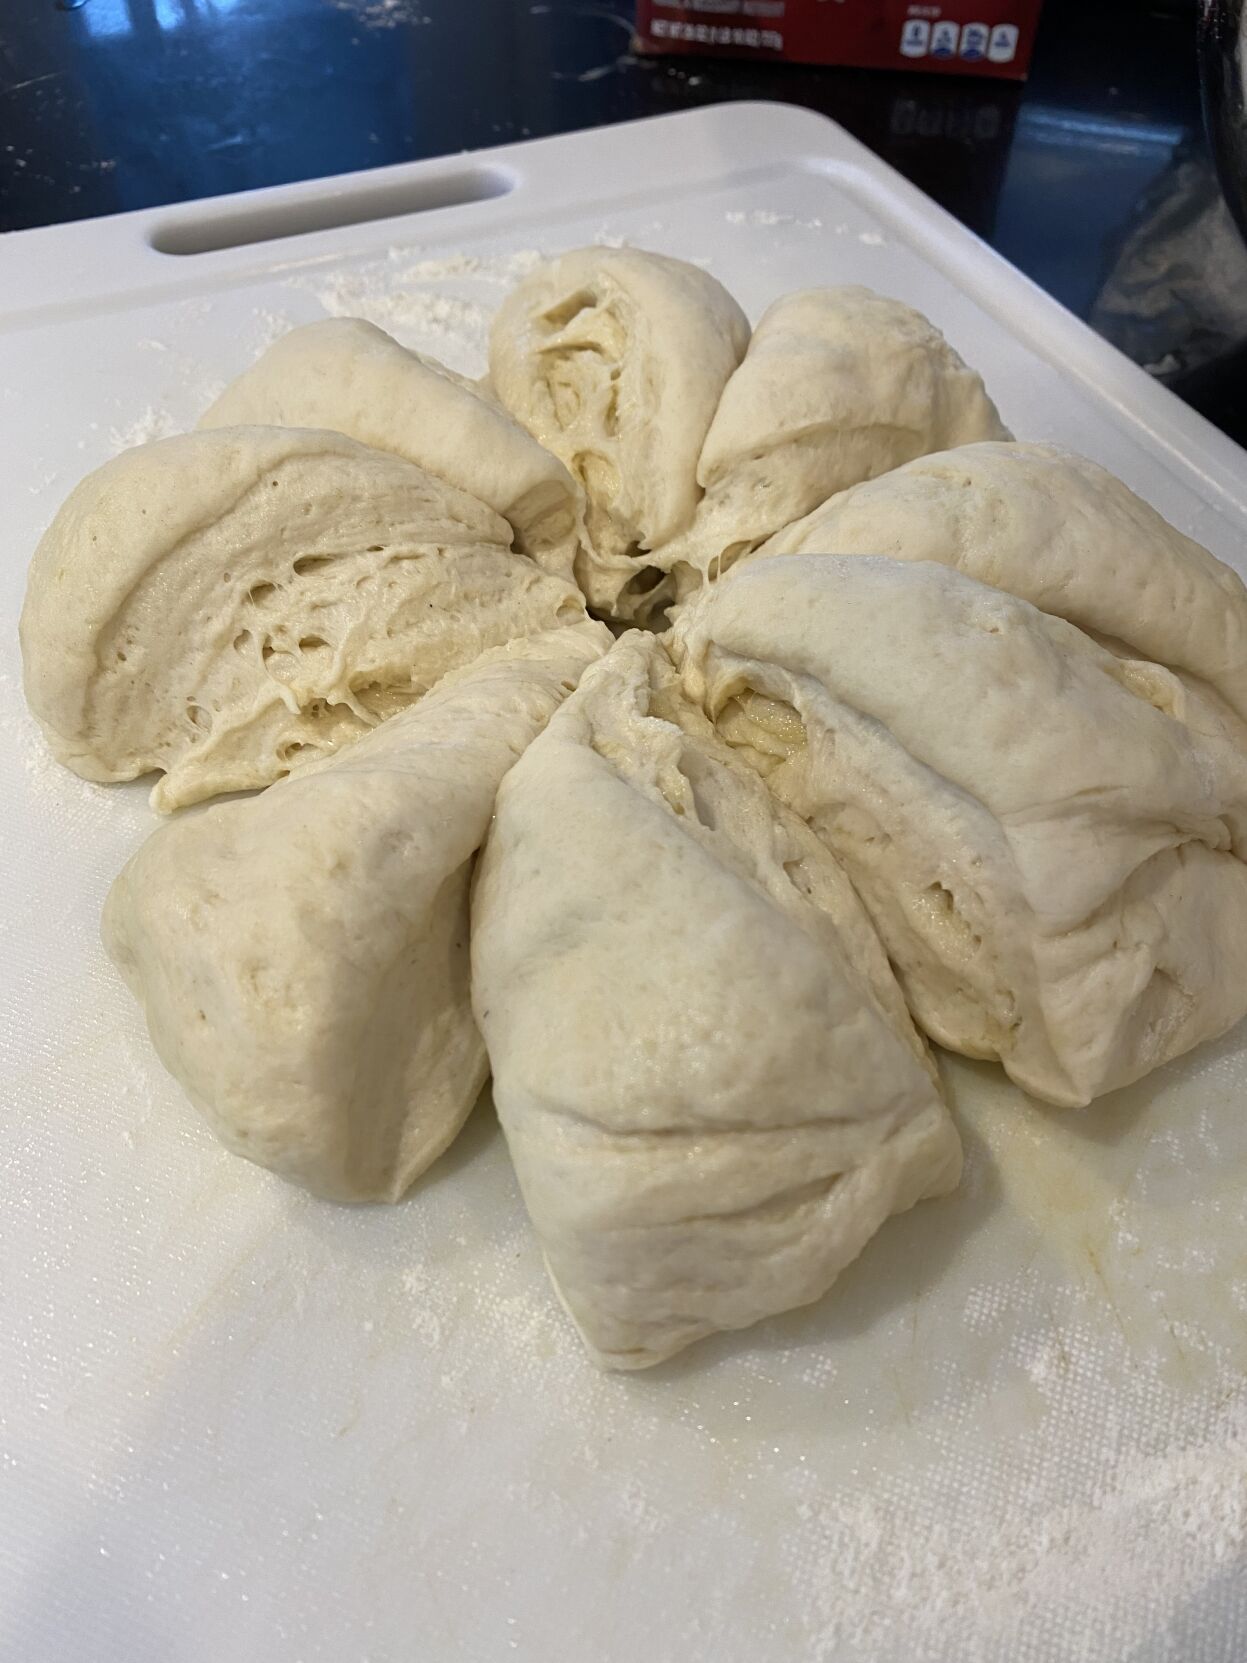 Rising flatbread dough